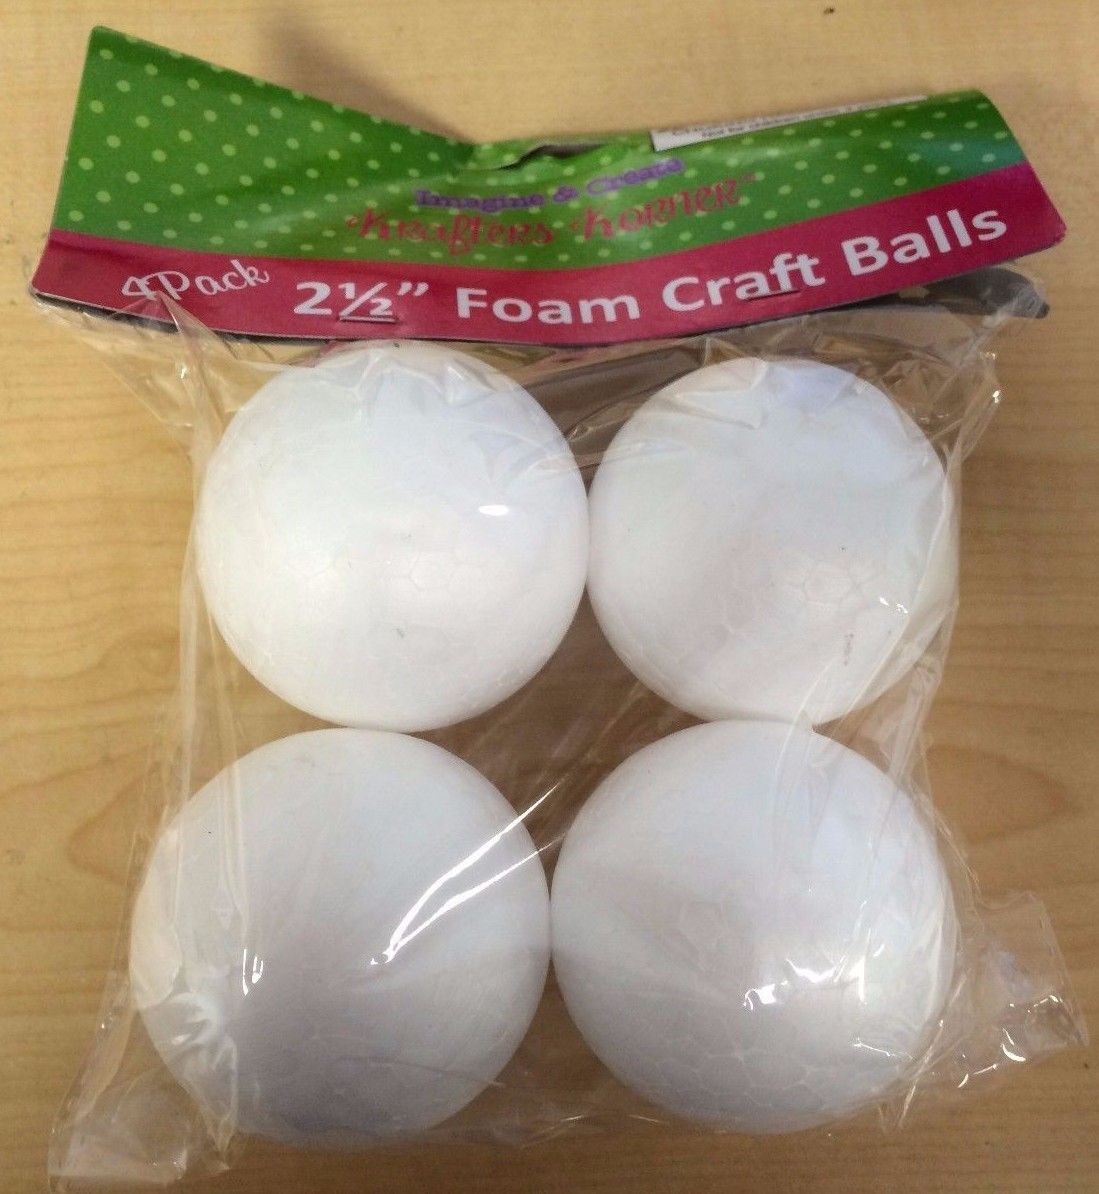 2X 4 Pack 2.5'' Foam Craft Balls (8 balls)